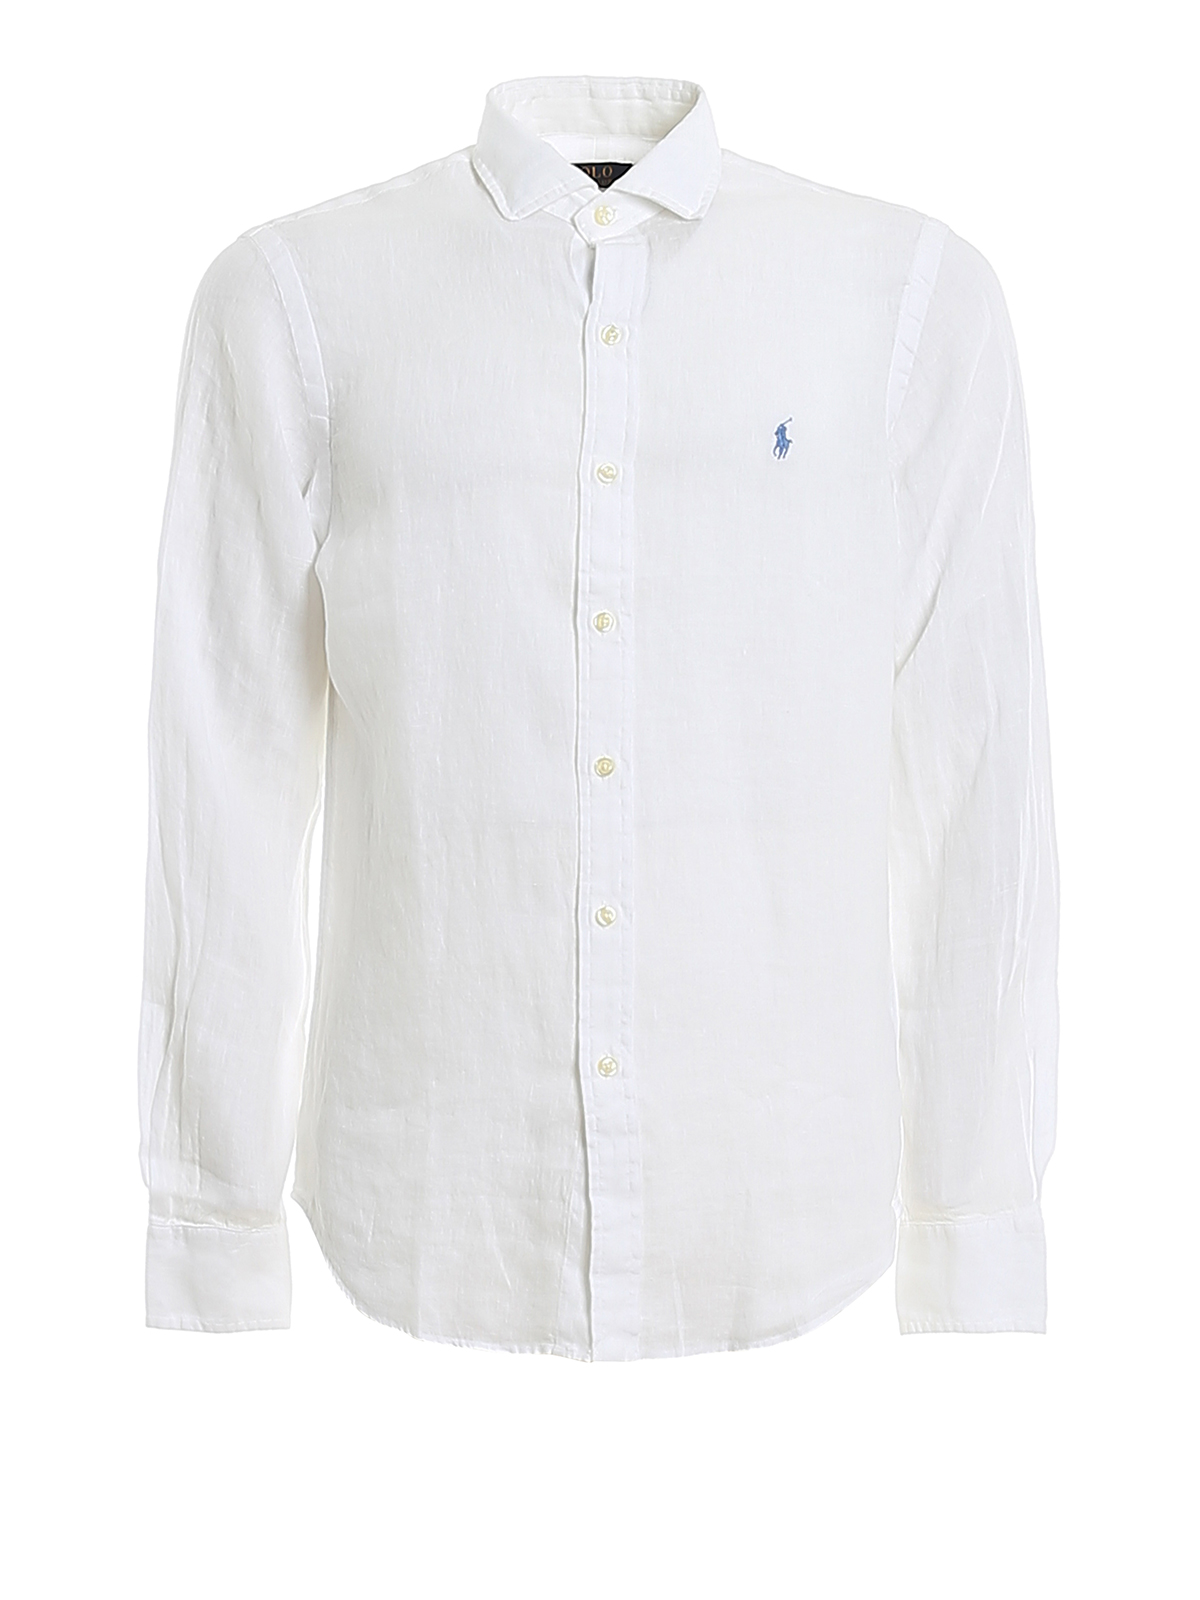 polo ralph lauren white linen shirt